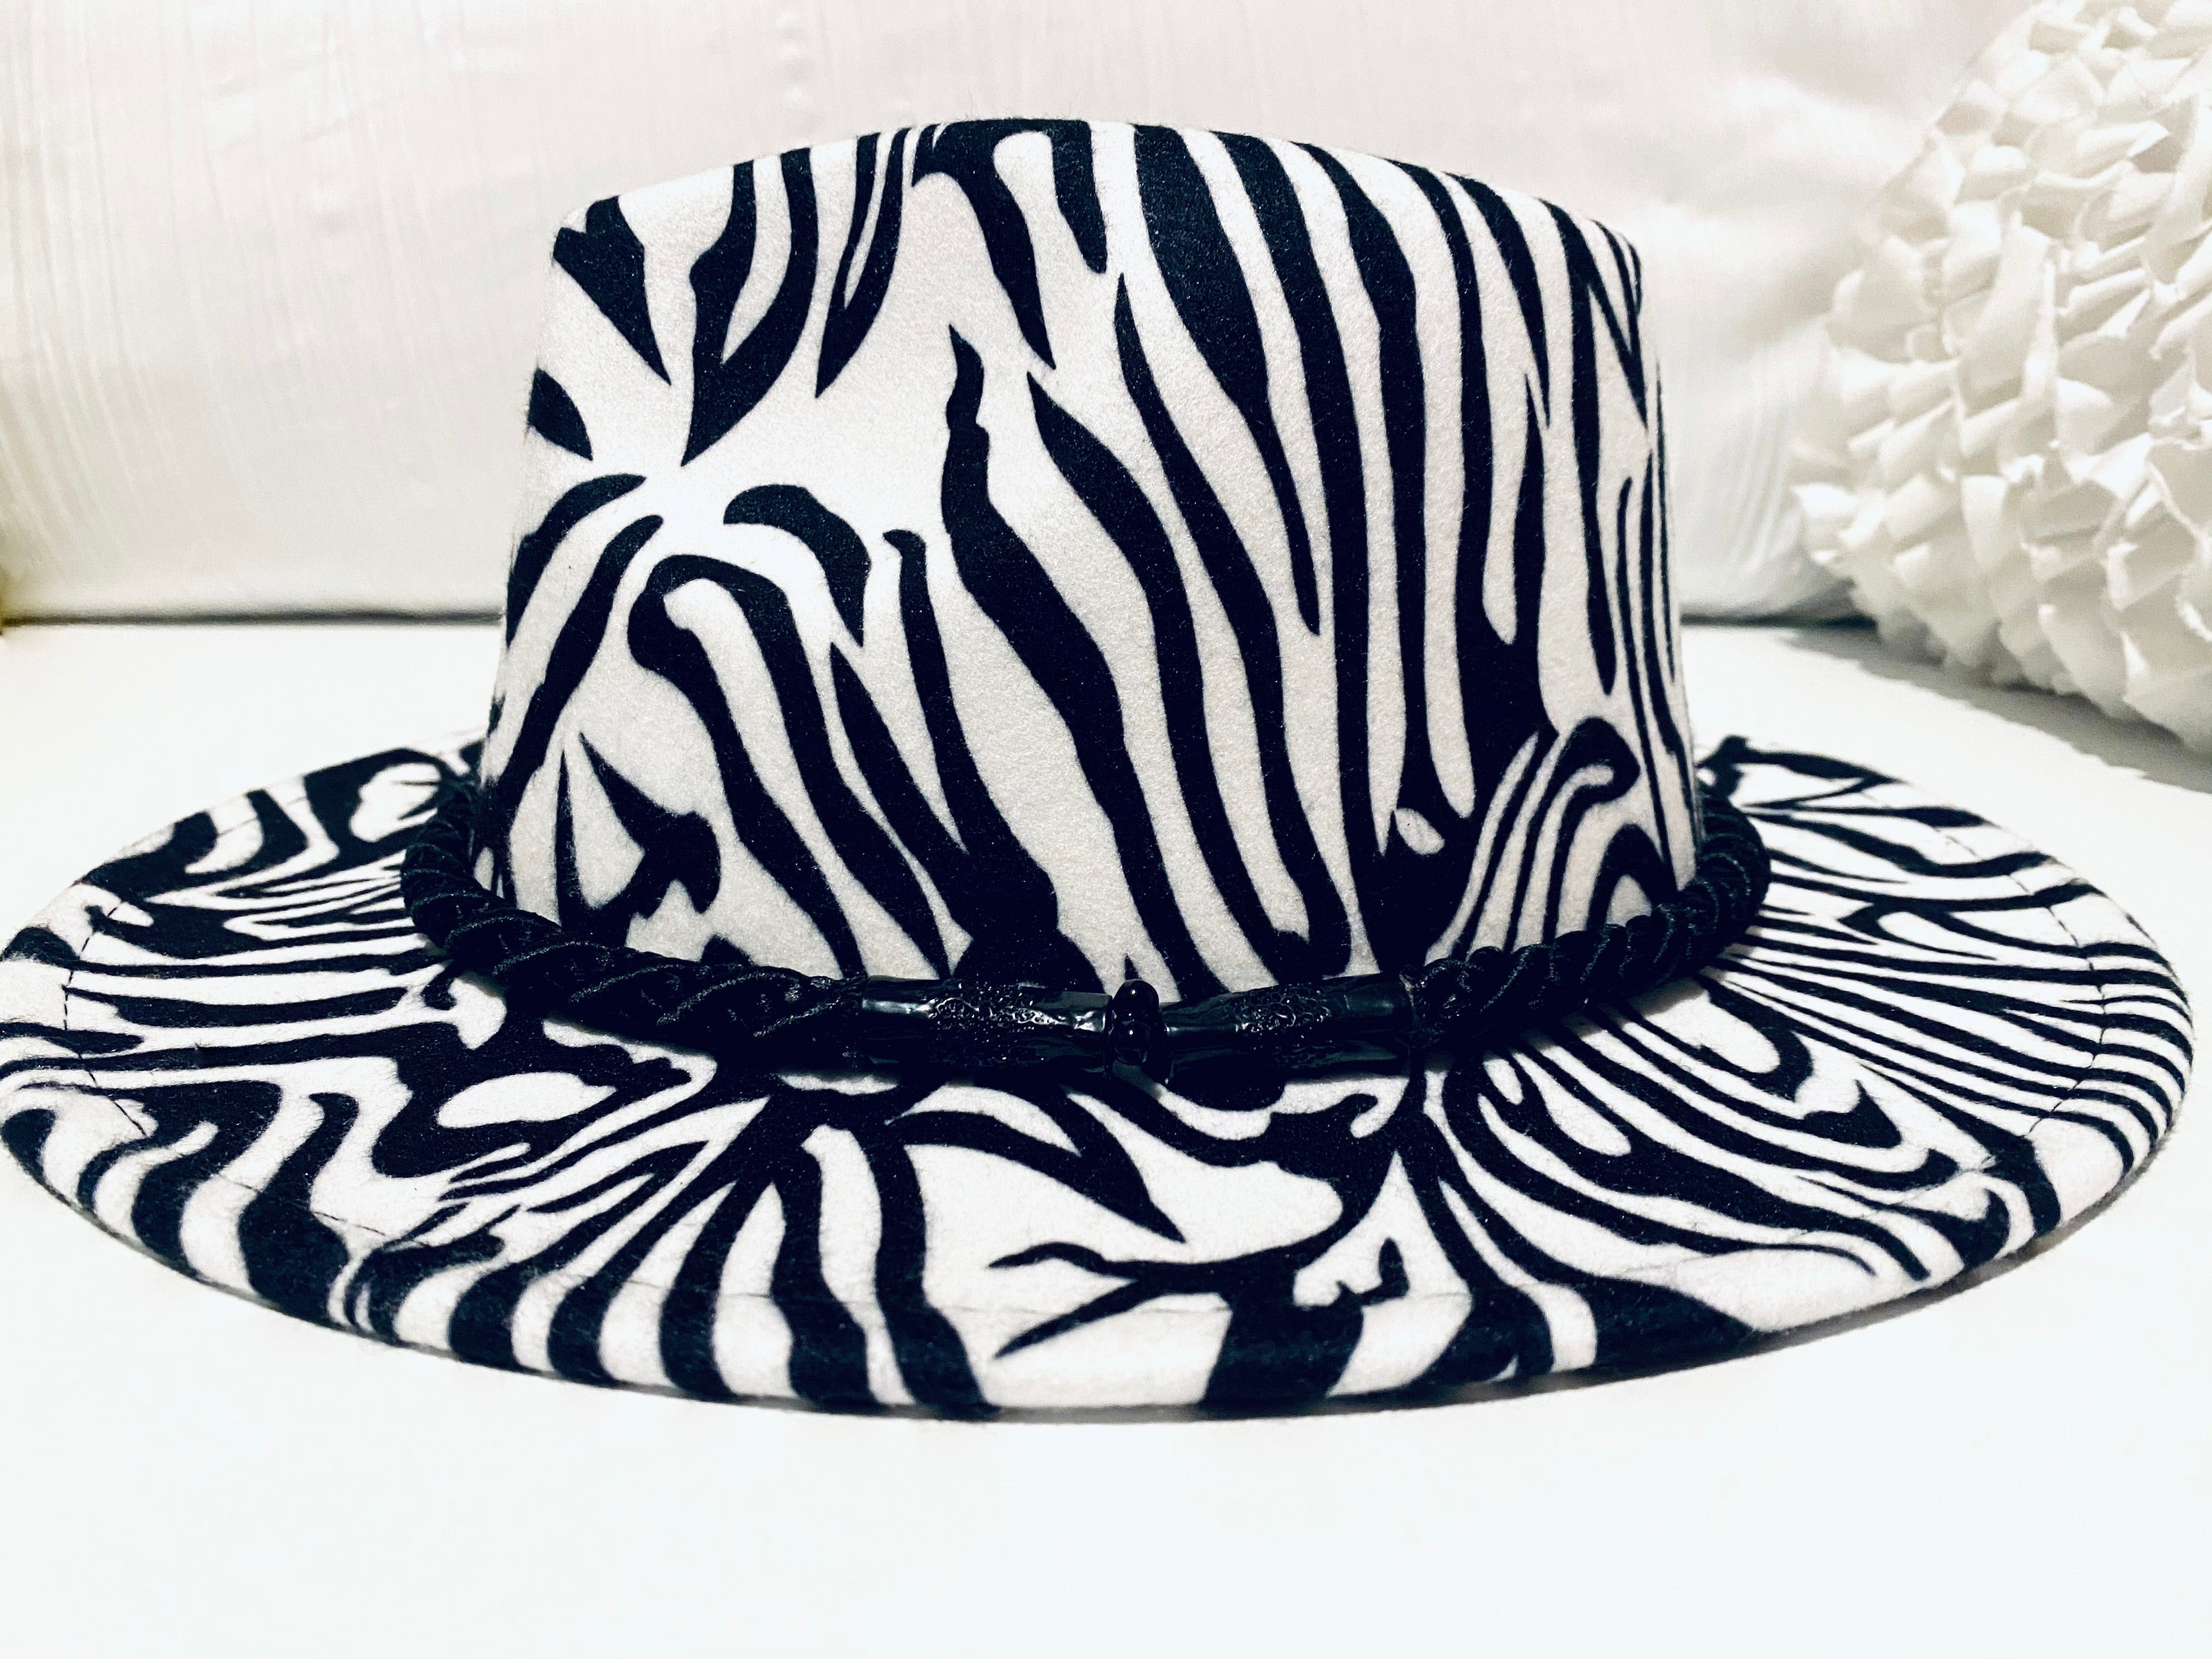 White Zebra Print Fedora Hat